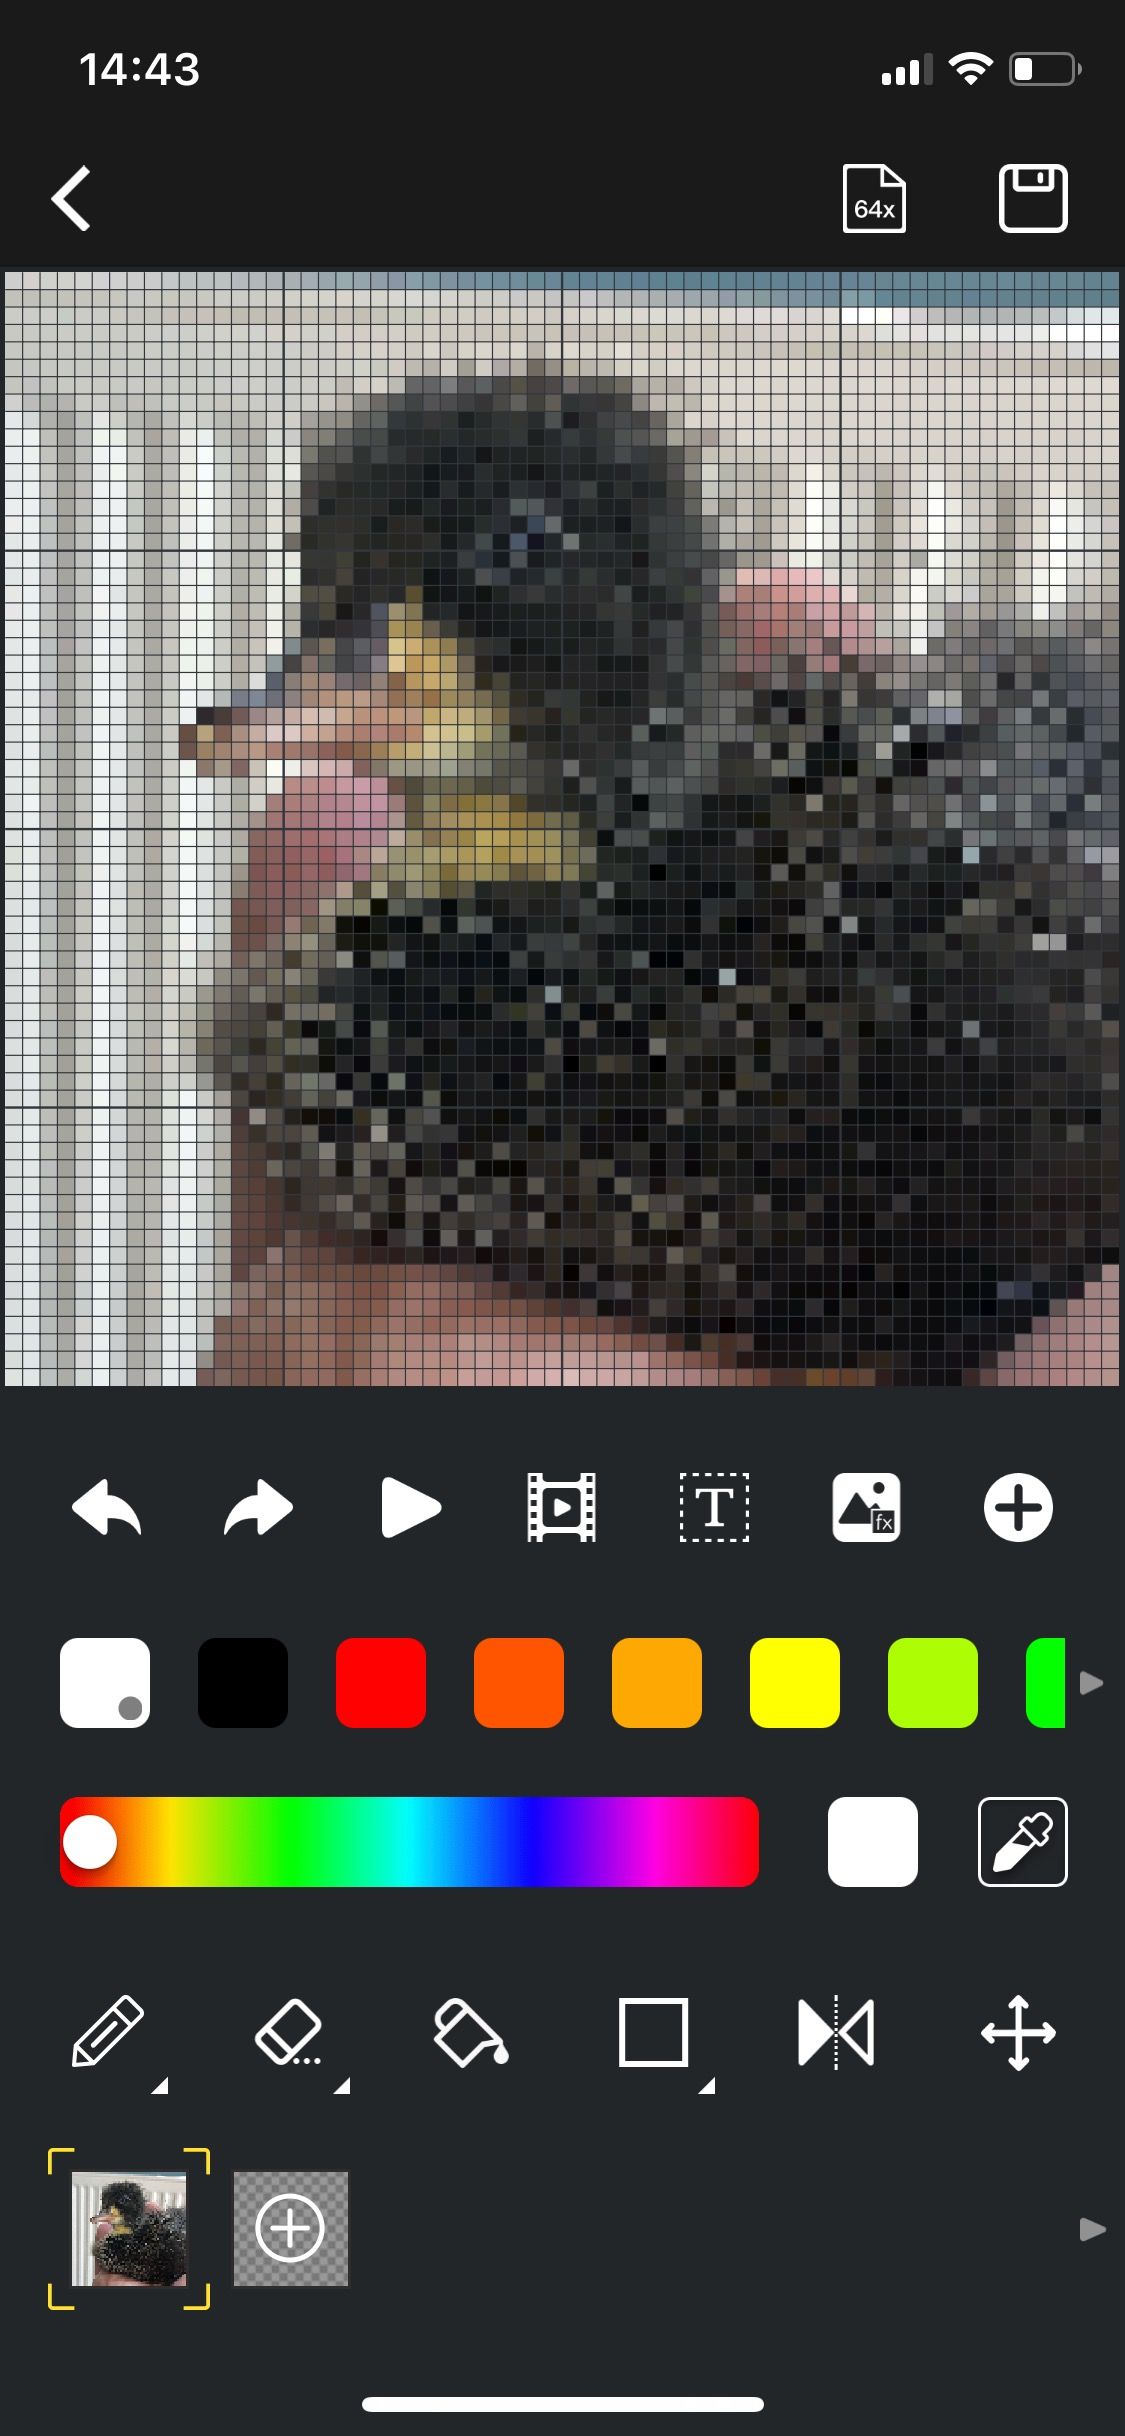 pixoo64 divoom app - create design duck